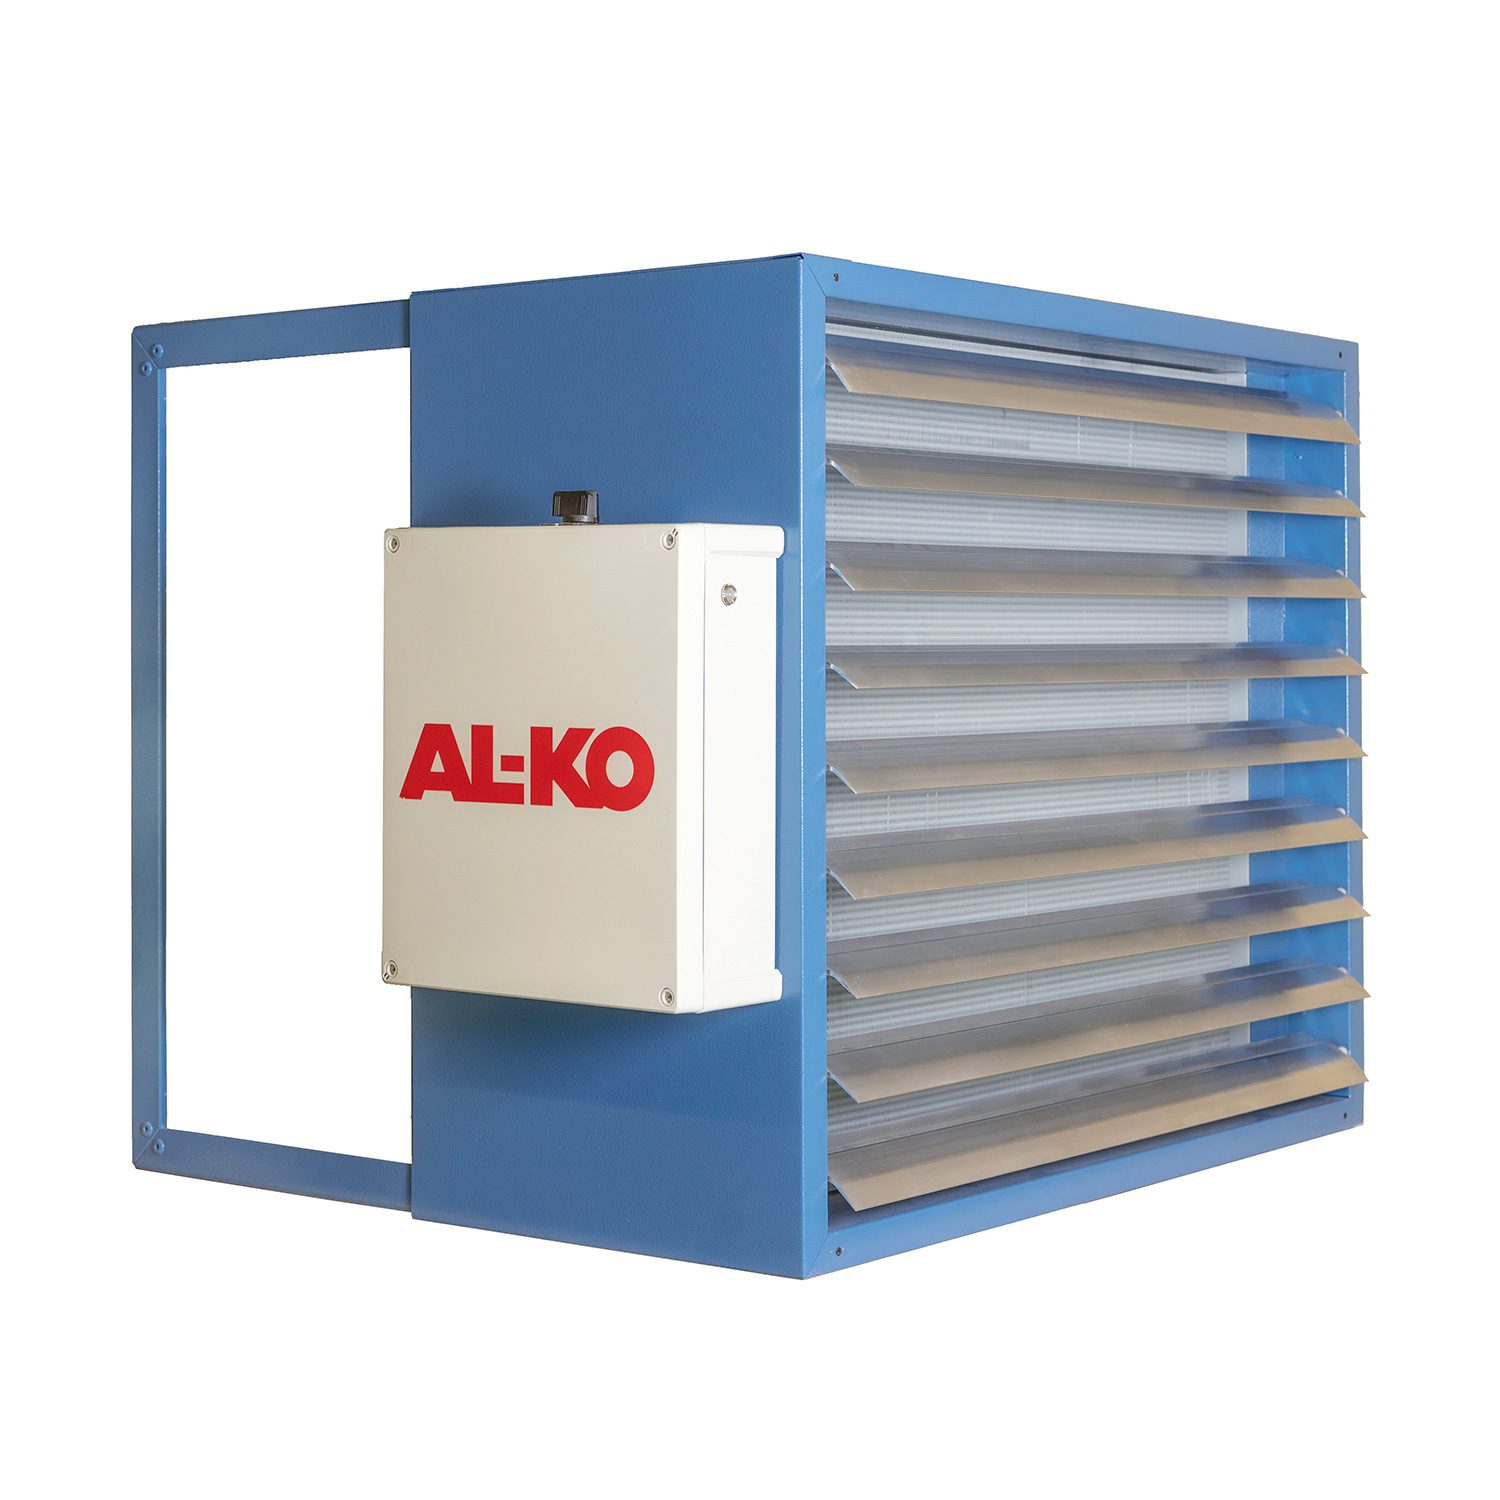 Riscaldatore e raffreddatore d’aria AL-KO INDUSTRIE – per ambienti più grandi